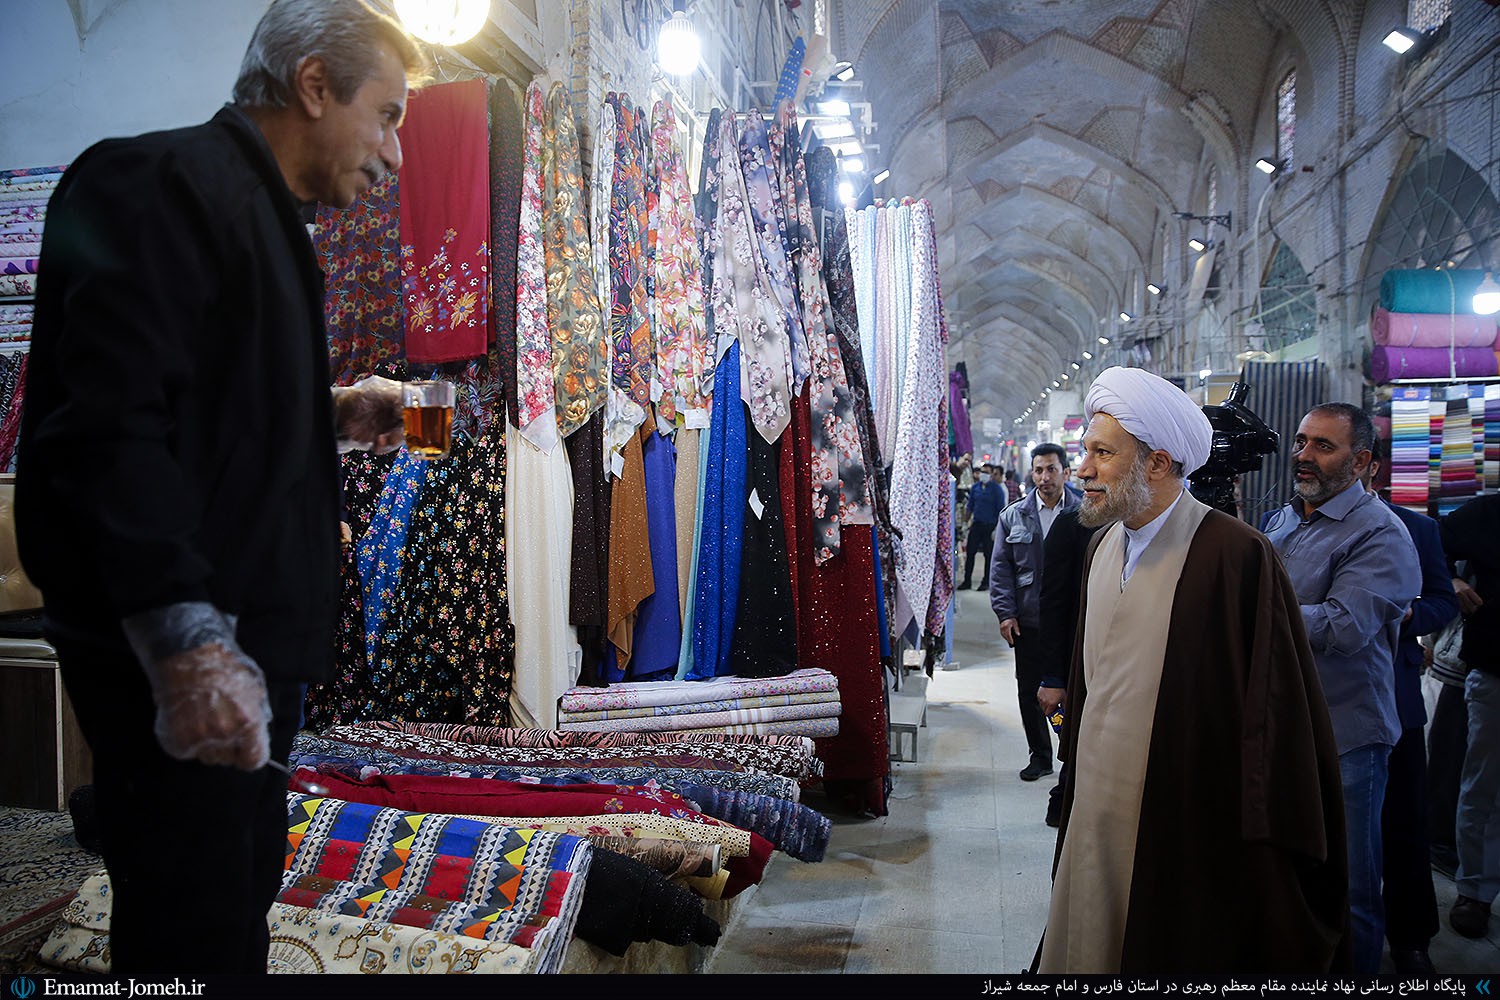 بازدید آیت الله دژکام از بازار وکیل شیراز و گفتگو با کسبه و بازاریان